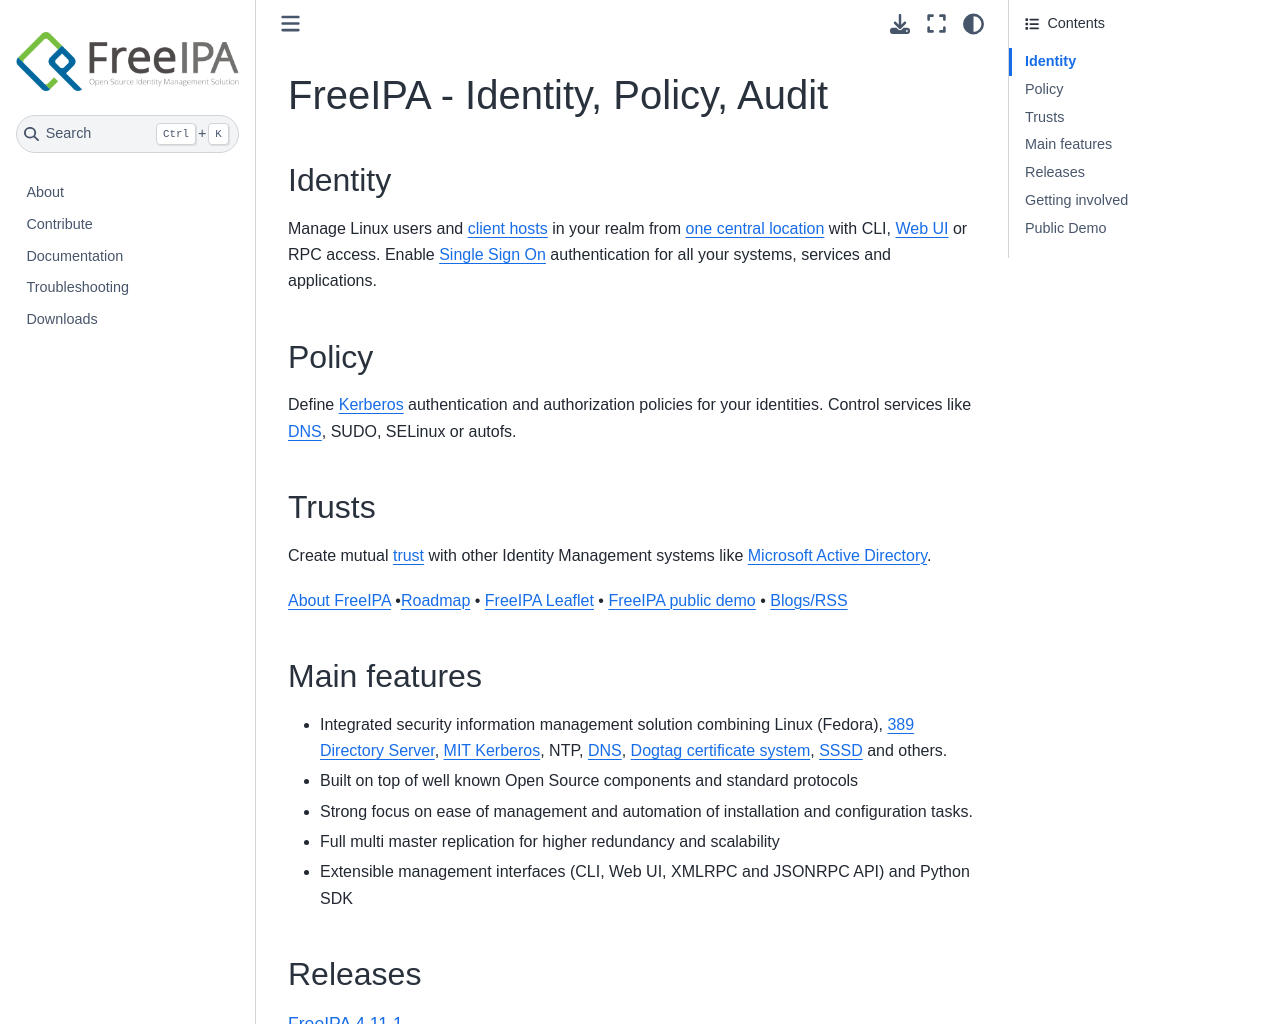 freeipa.org